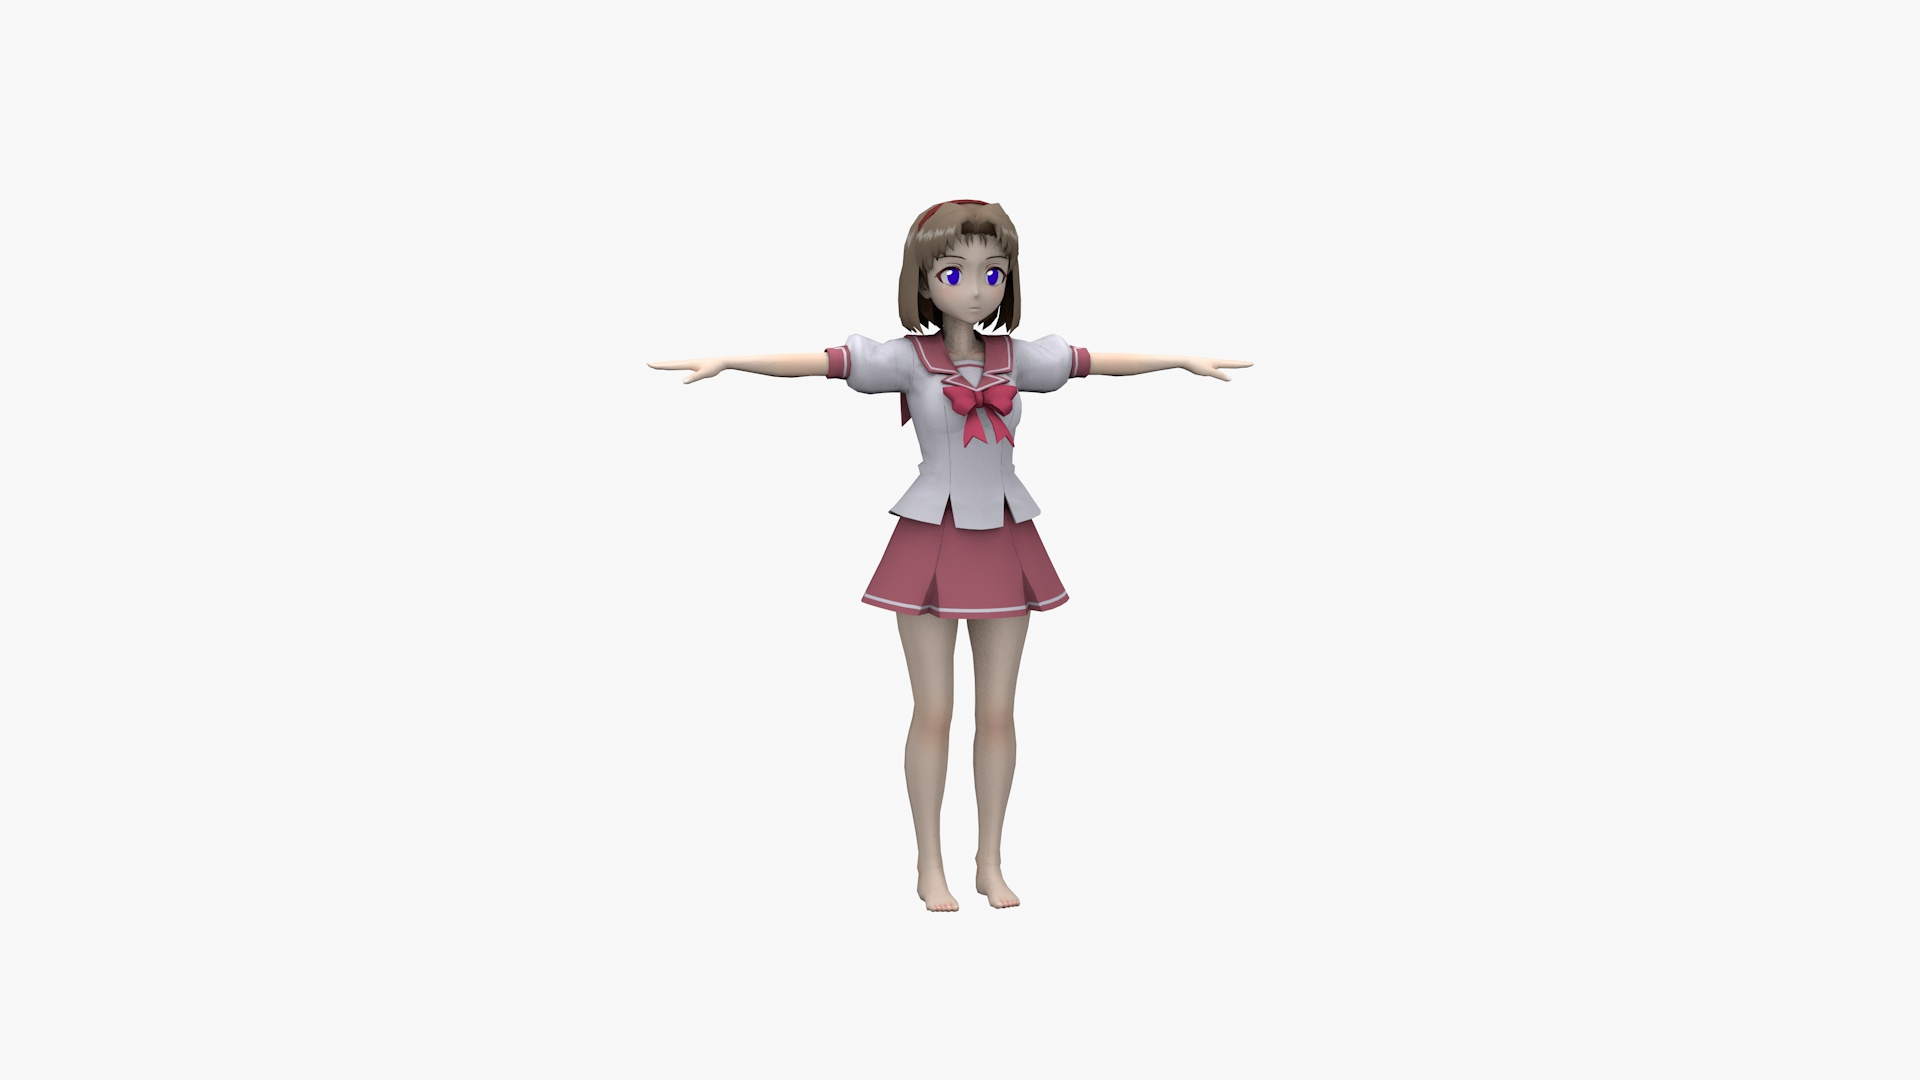 Mlp Human Anime Porn Schoolgirl - Anime Schoolgirl 3D model - TurboSquid 1851618